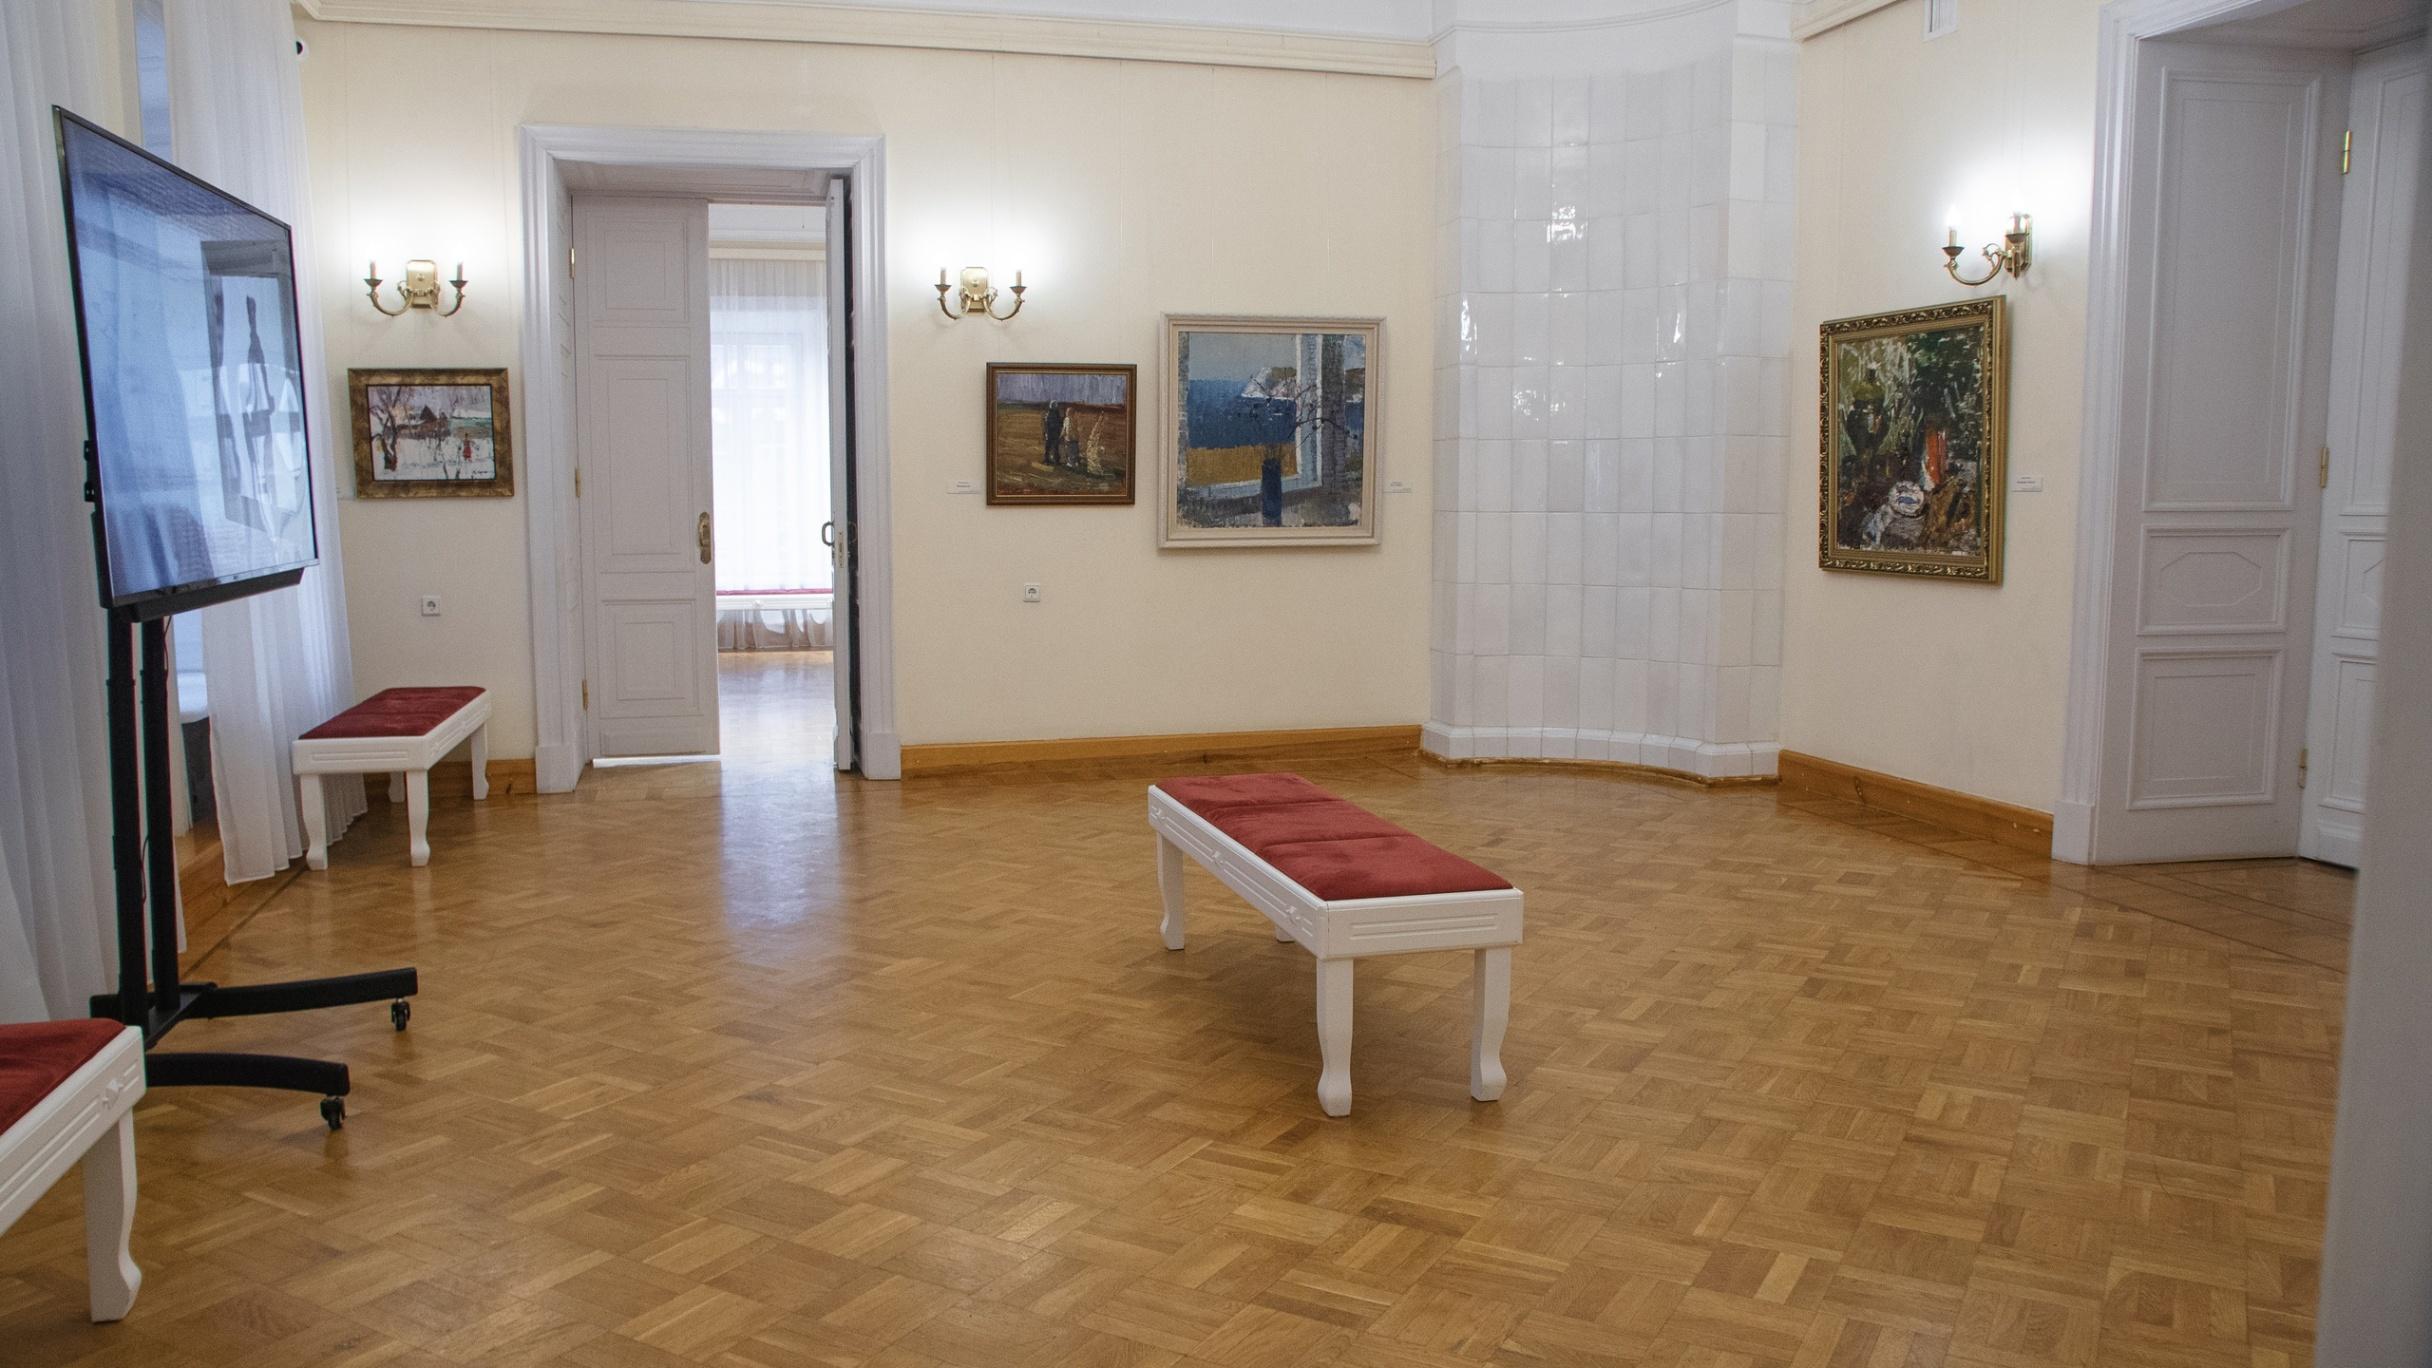 Липецкий музейно-выставочный центр, афиша на 21 июня – афиша